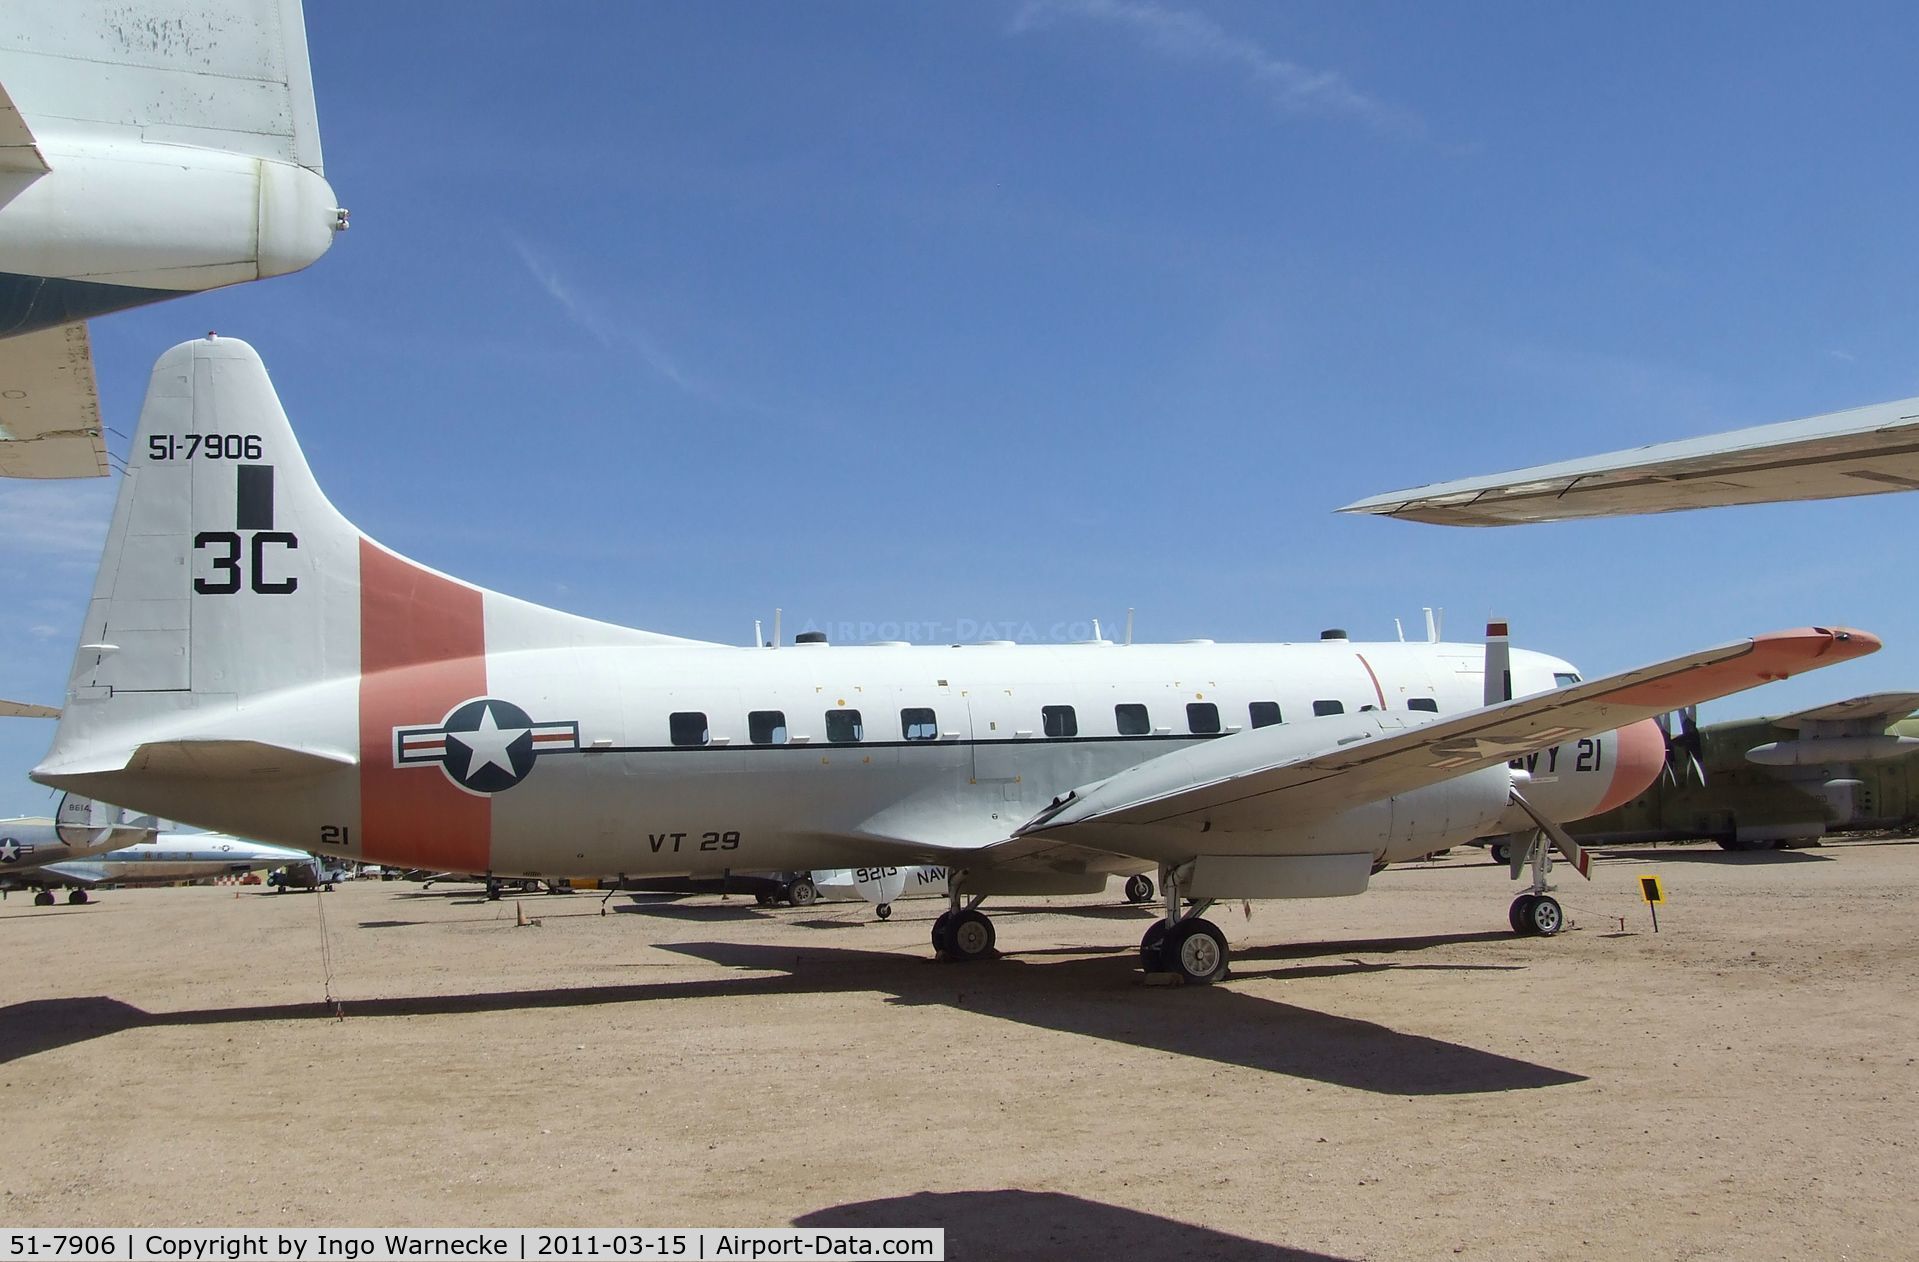 51-7906, 1951 Convair T-29B C/N 240-318, Convair T-29B at the Pima Air & Space Museum, Tucson AZ